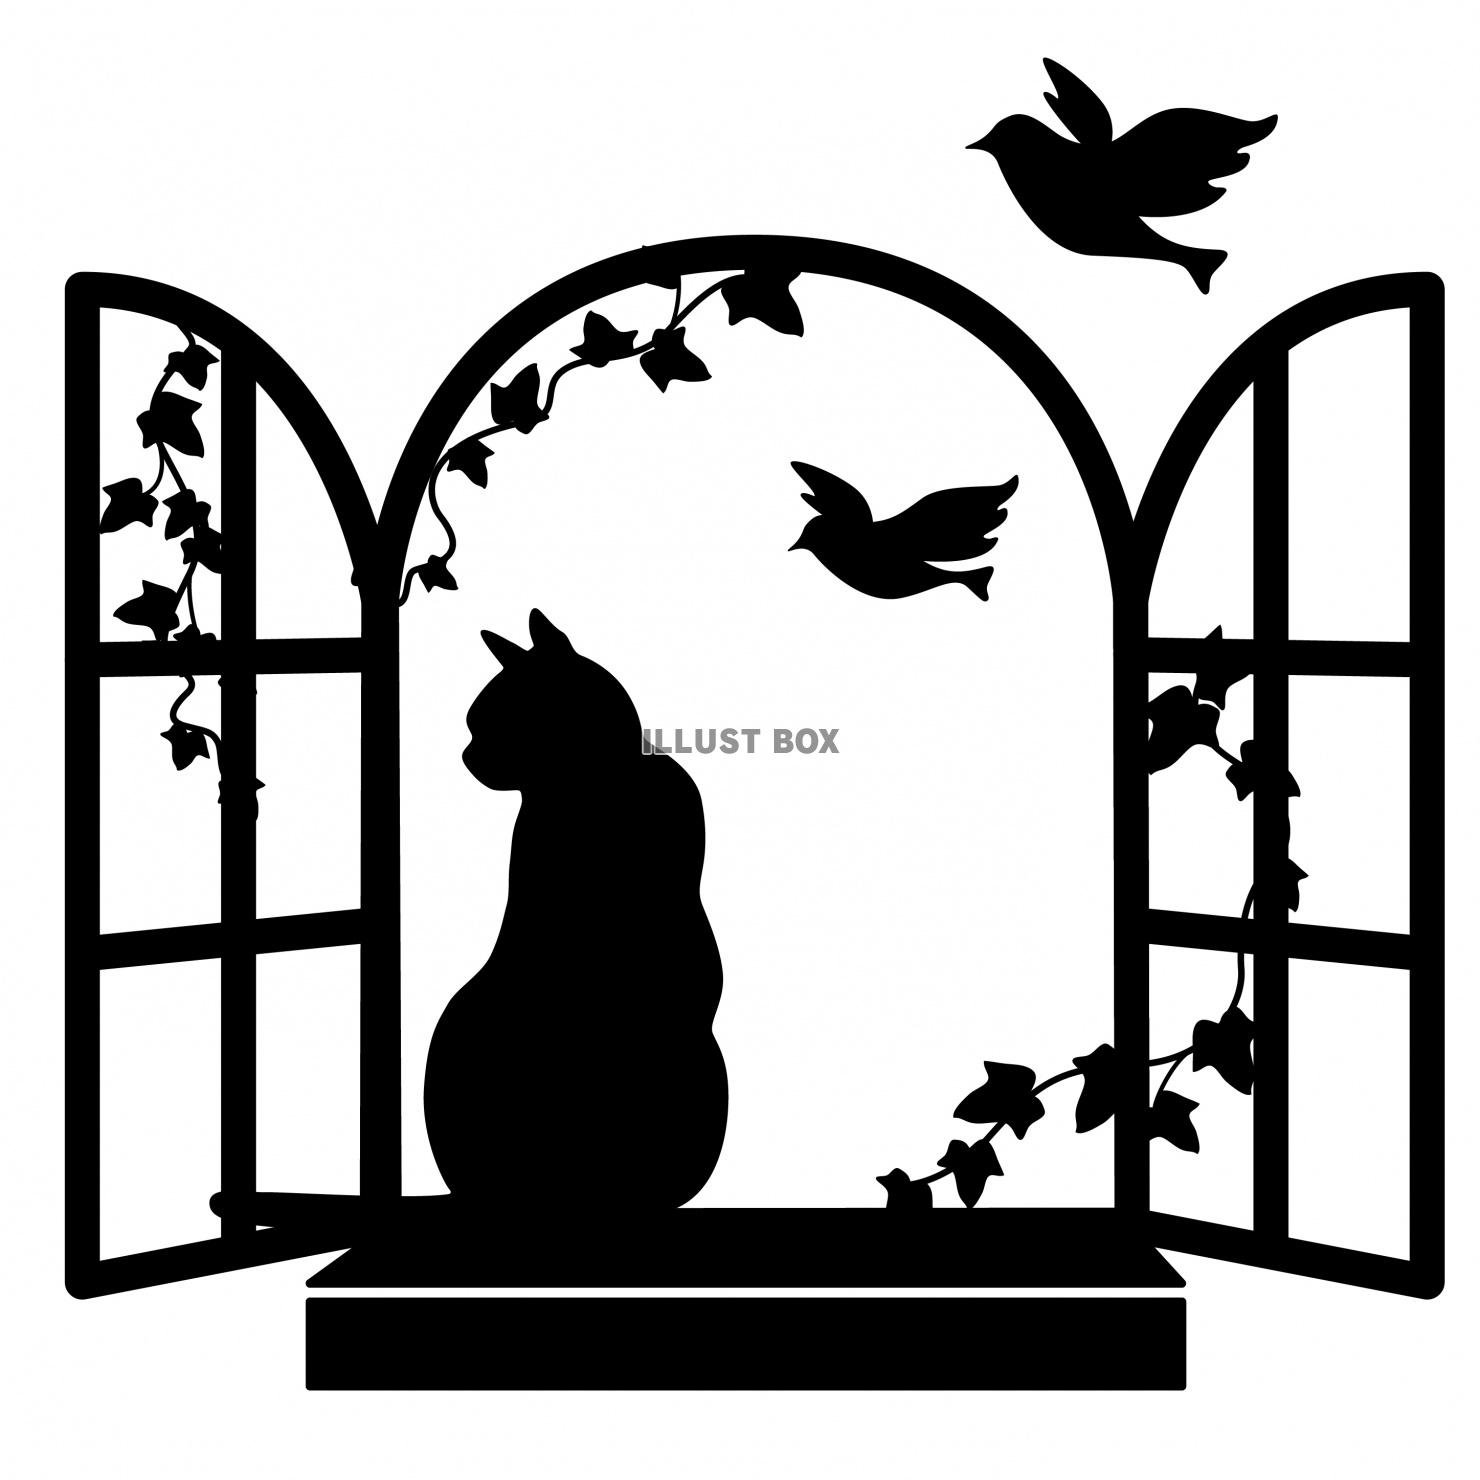 無料イラスト 猫 シルエット 黒猫 窓際のネコと鳥